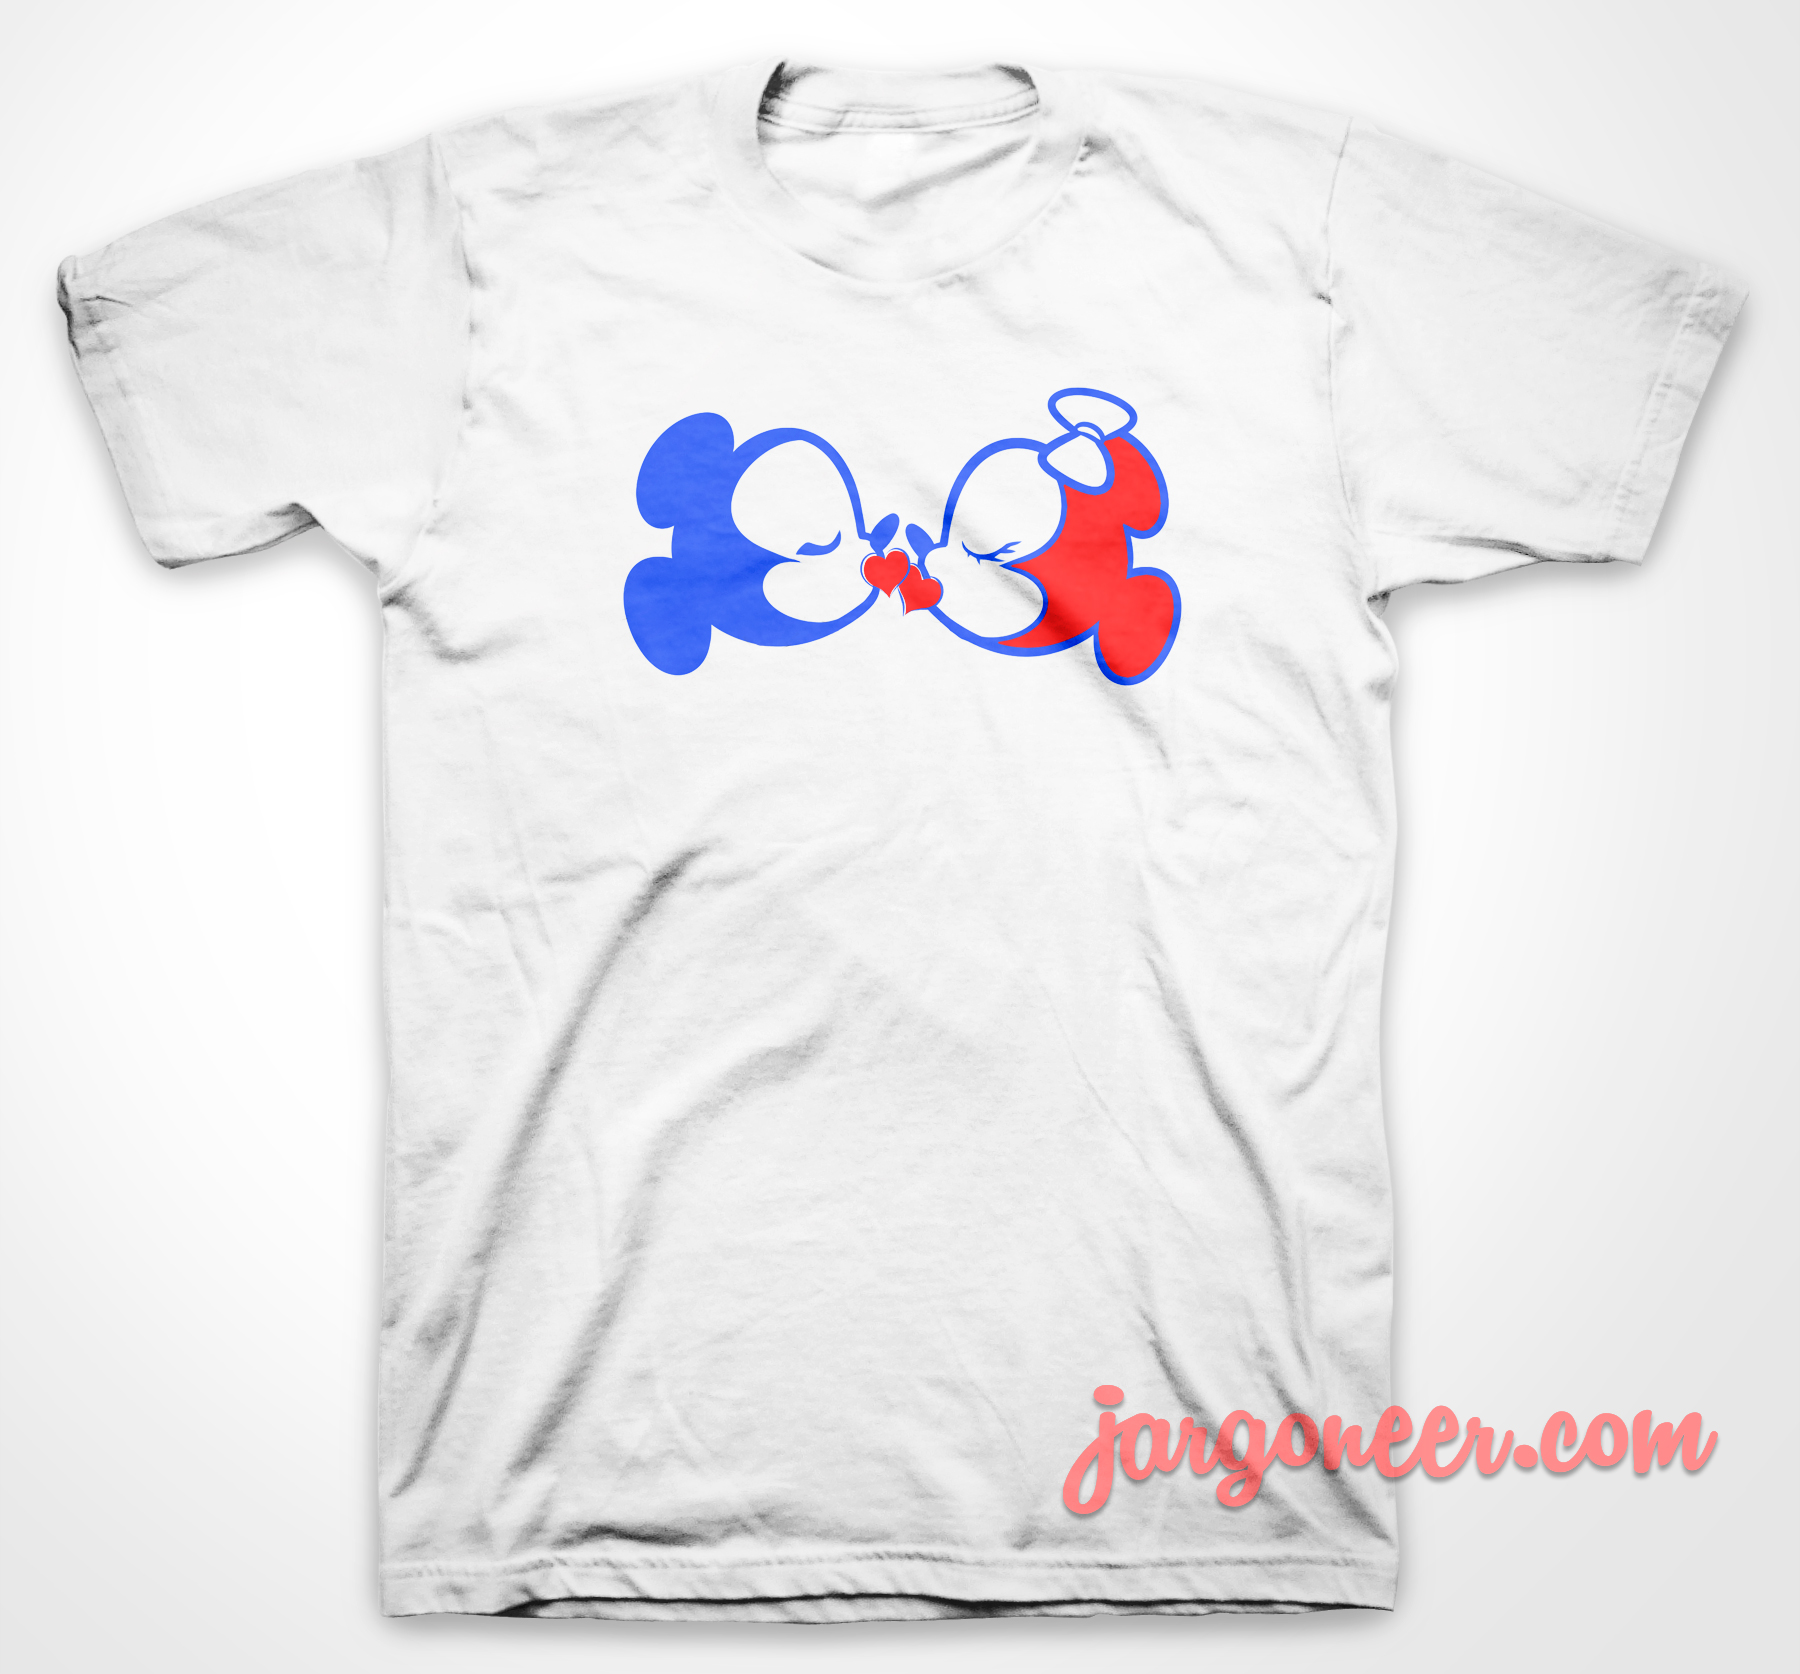 Me Kiss Mouse - Shop Unique Graphic Cool Shirt Designs